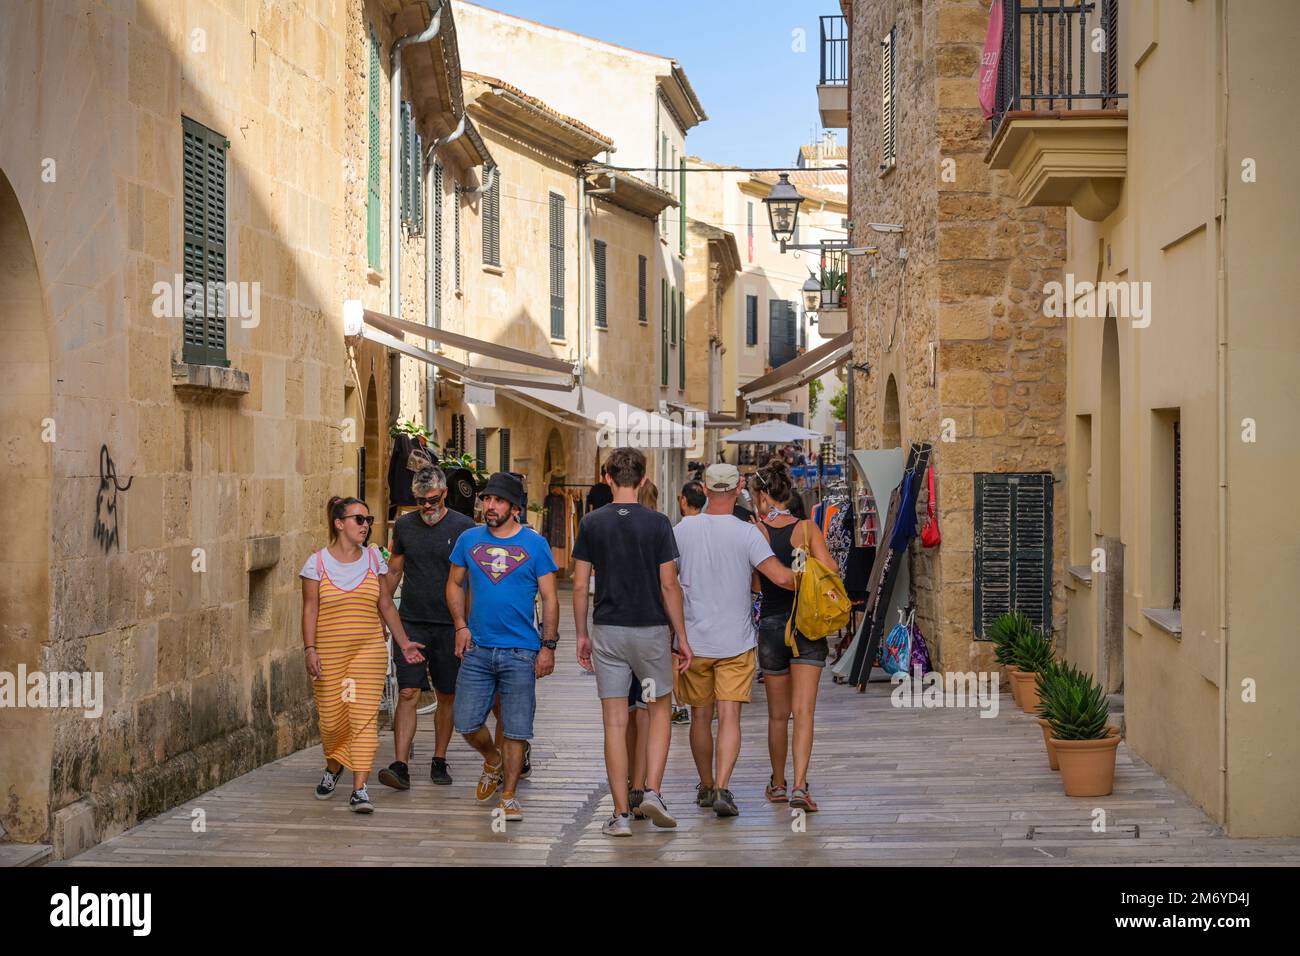 Passanten, Gasse, Altstadt, Alcudia, Mallorca, Spanien Stock Photo